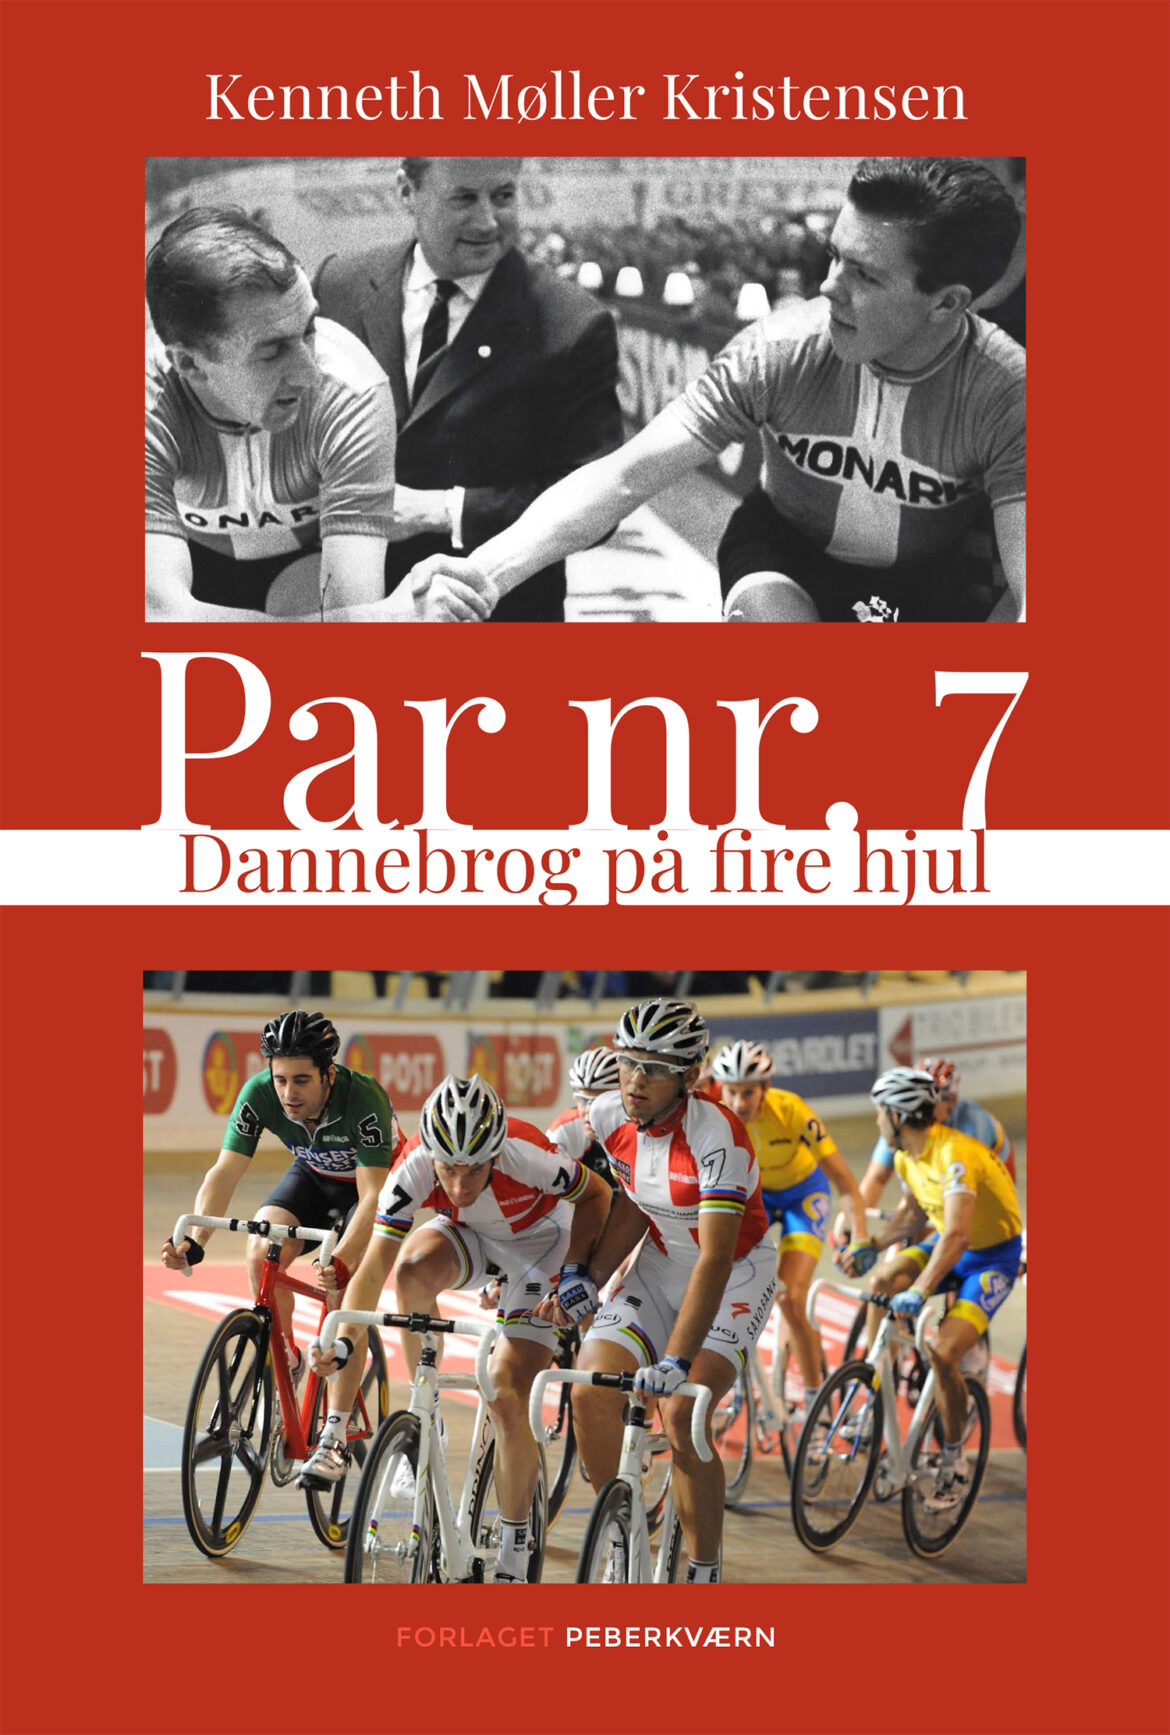 Ny dansk cykelbog om Par nr. 7 er udkommet